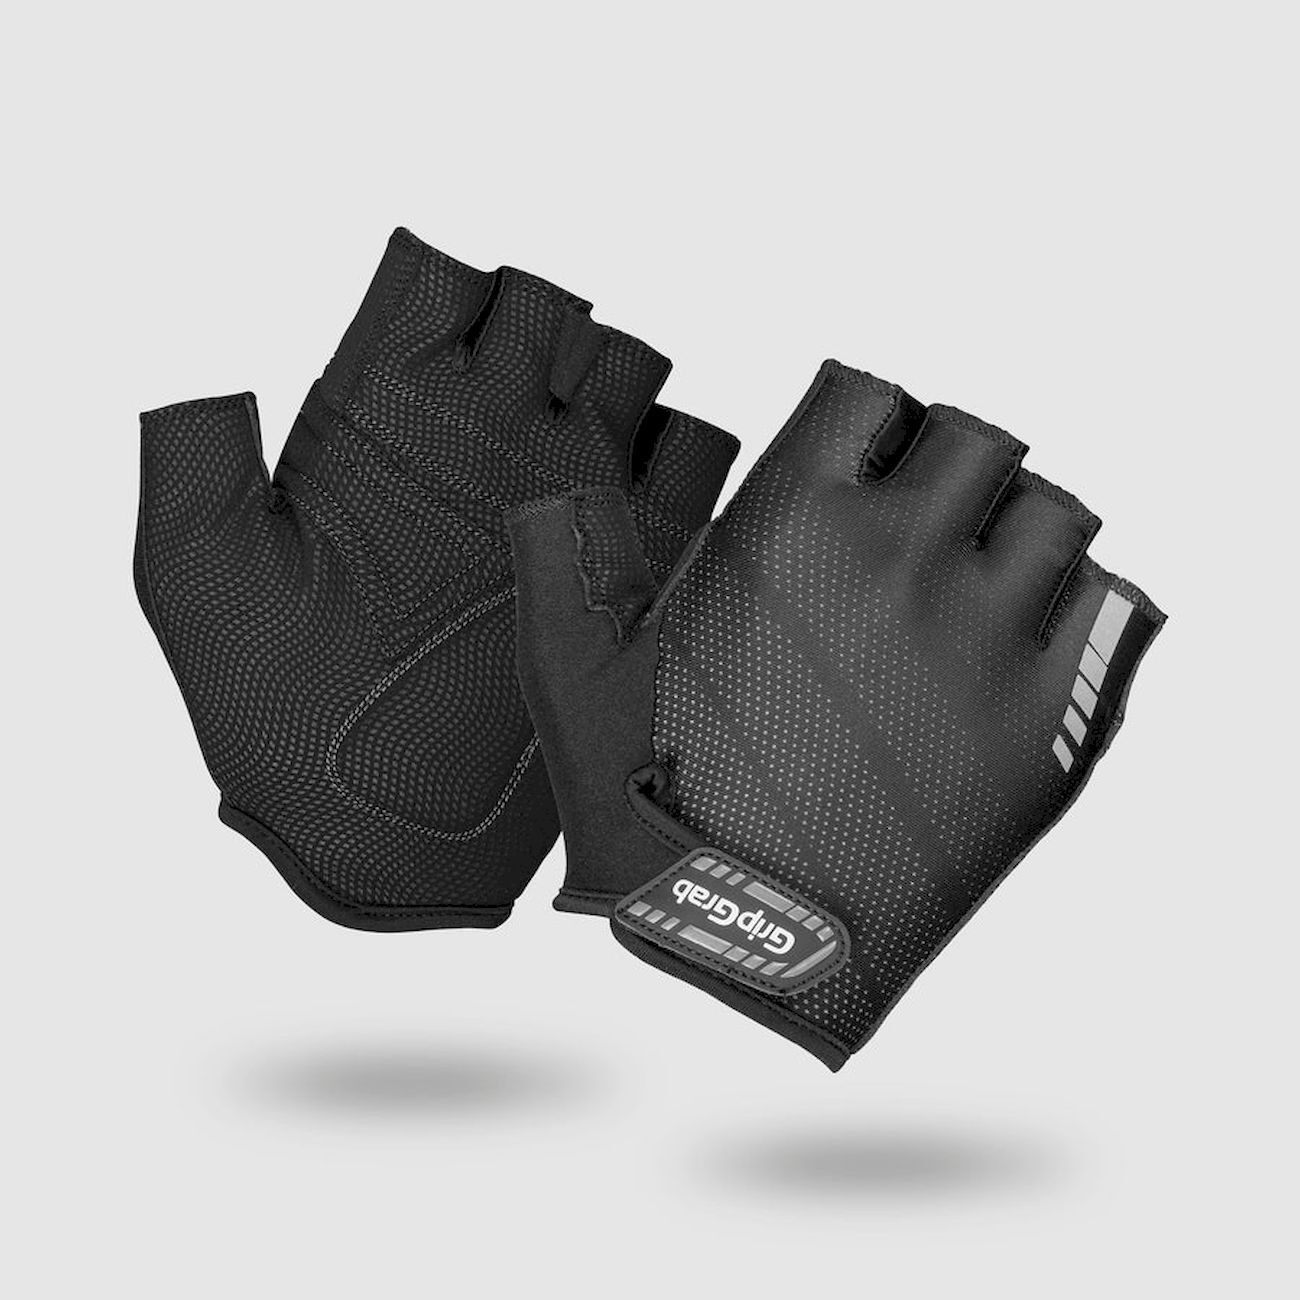 Grip Grab Rouleur Padded Gloves - Short finger gloves - Men's